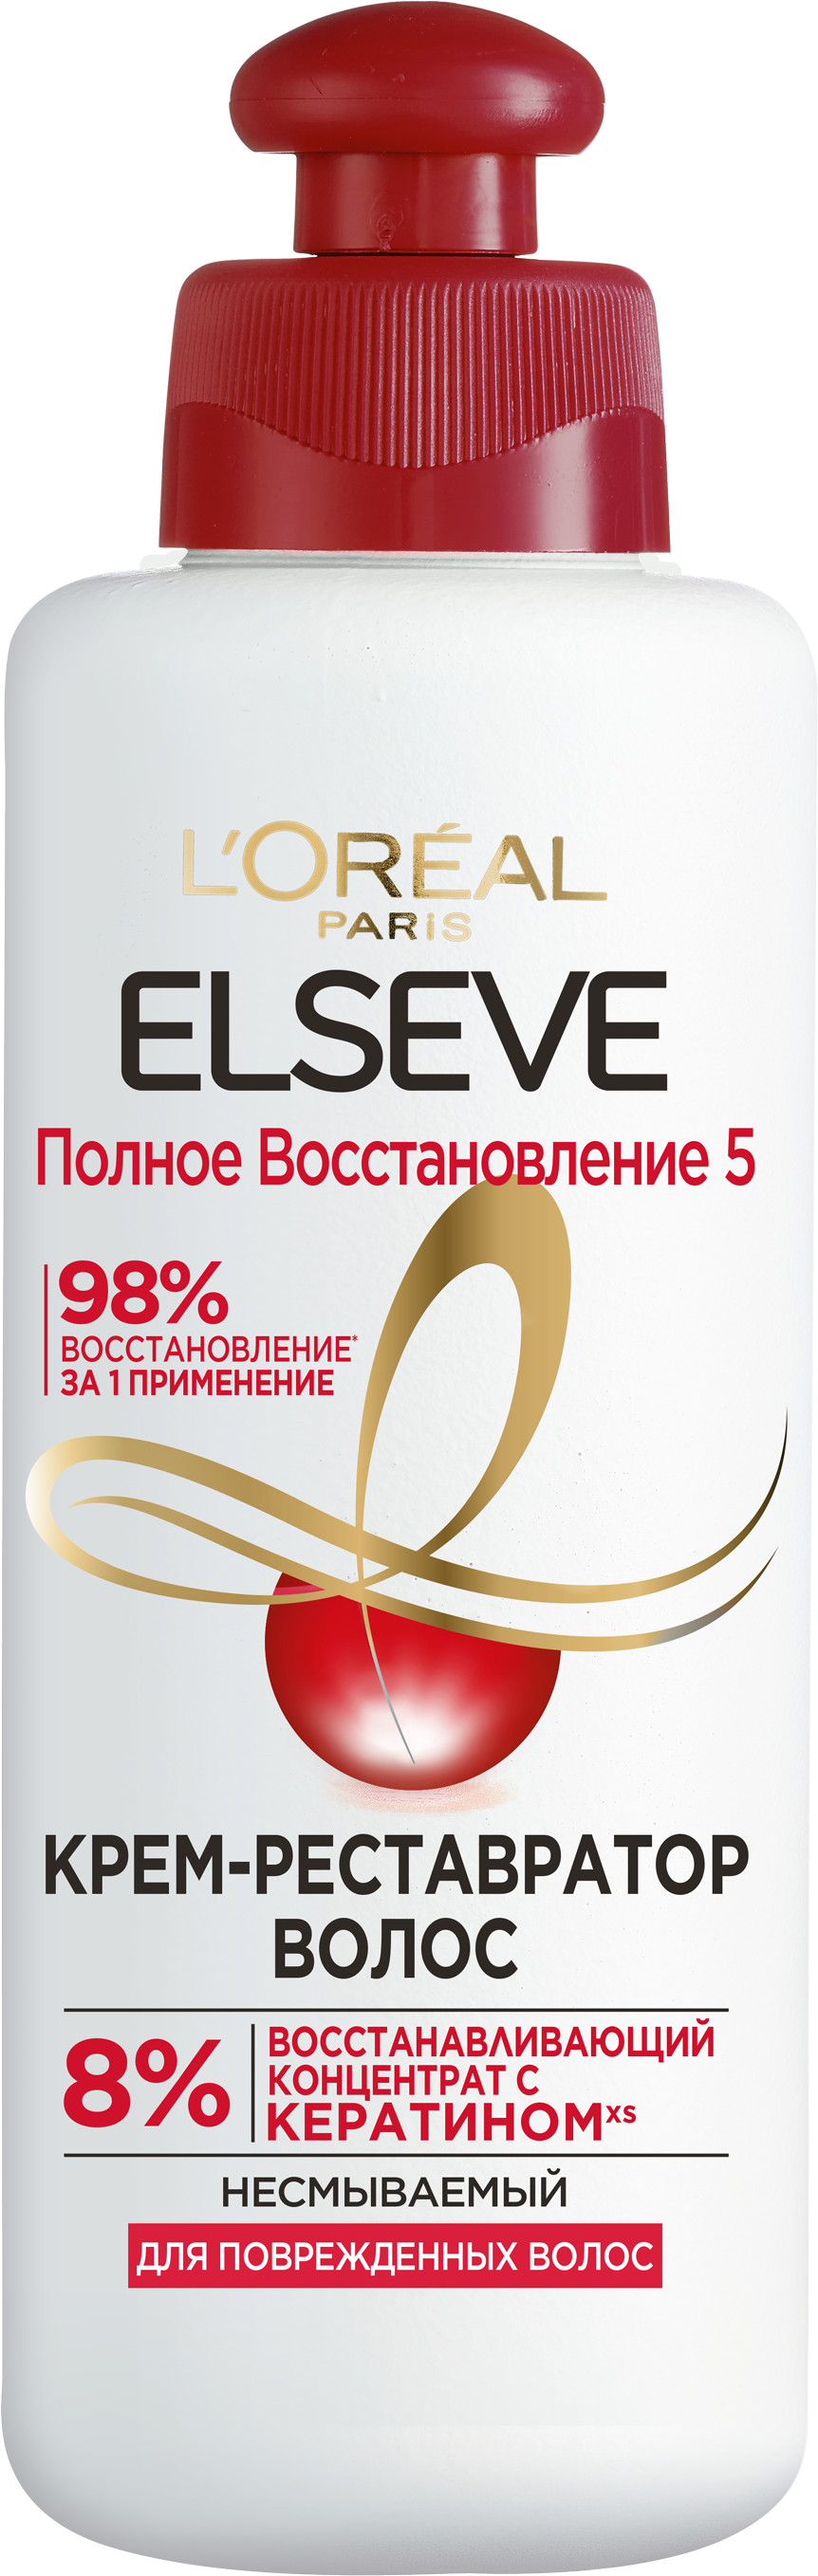 Elseve Крем-реставратор для волос L'Oreal Elseve Полное восстановление 5 (200 мл)